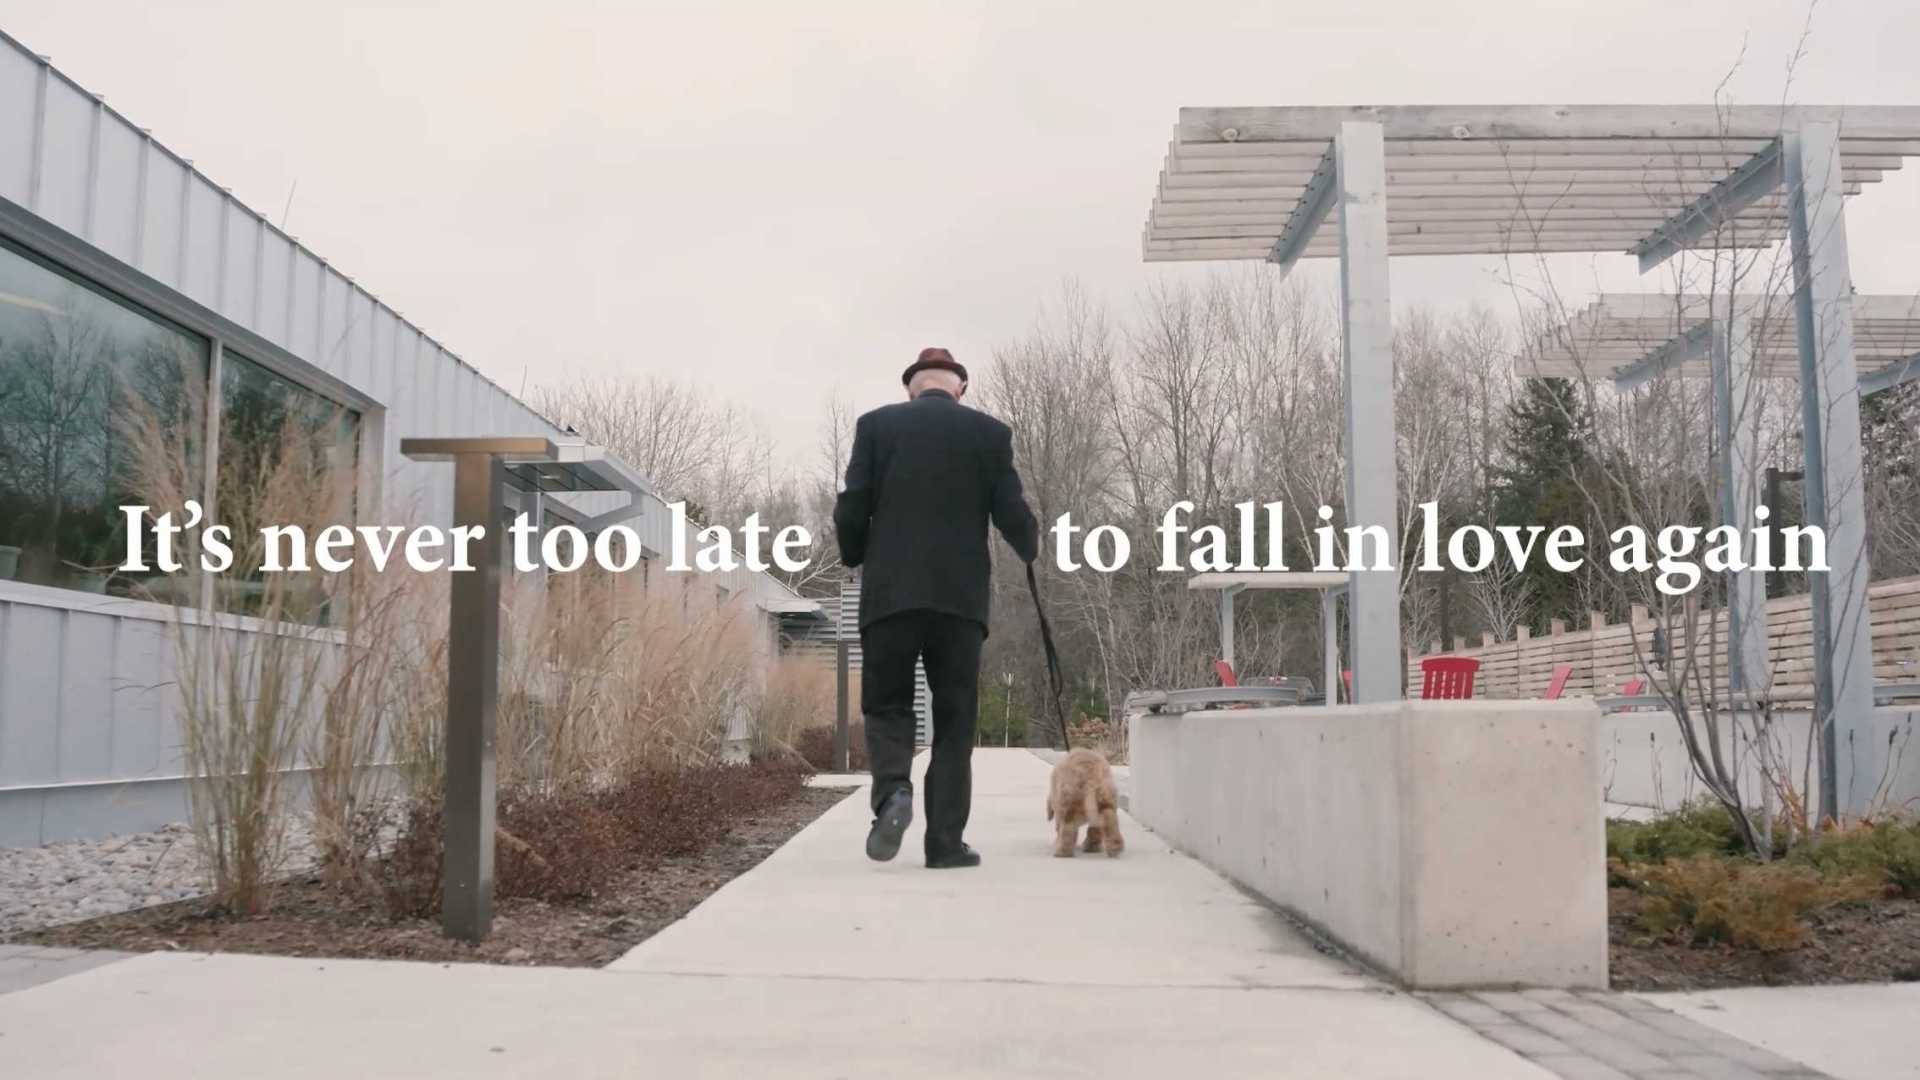 宠物领养假日情感广告《相爱永远不晚》